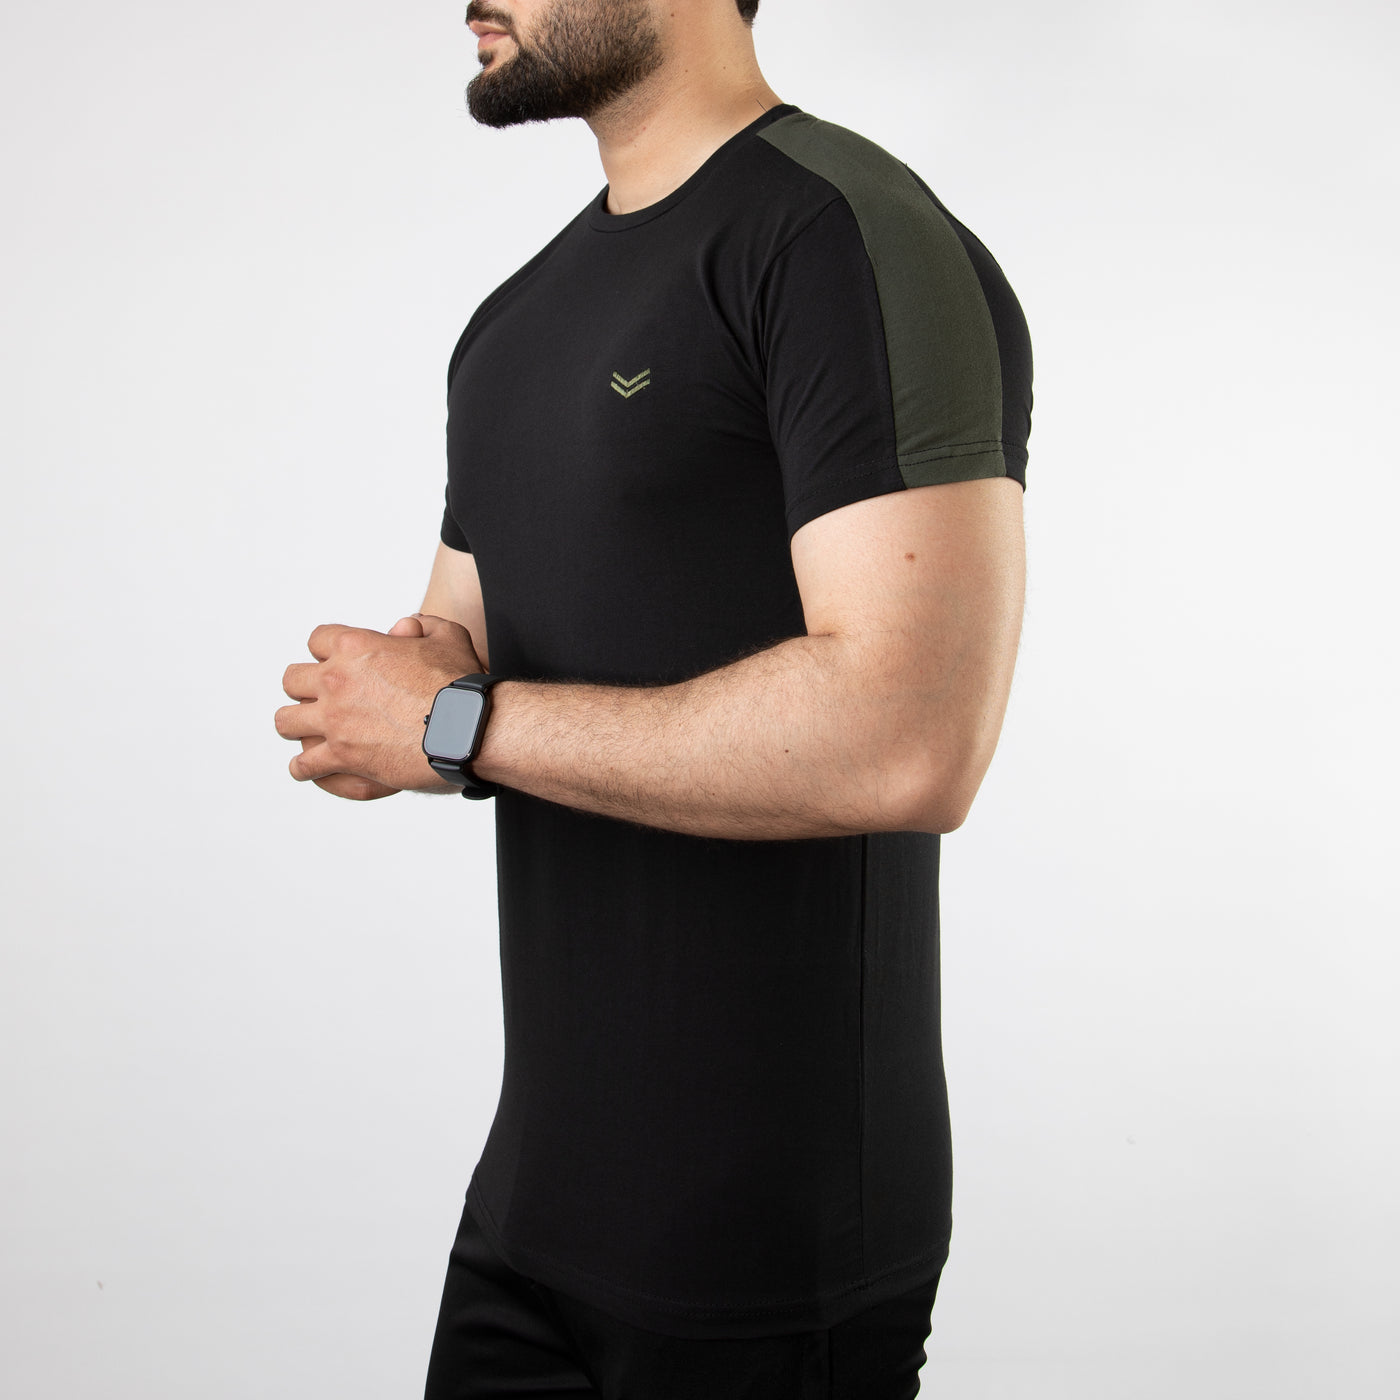 Black Lycra Cotton T-Shirt with Olive Shoulder Panels